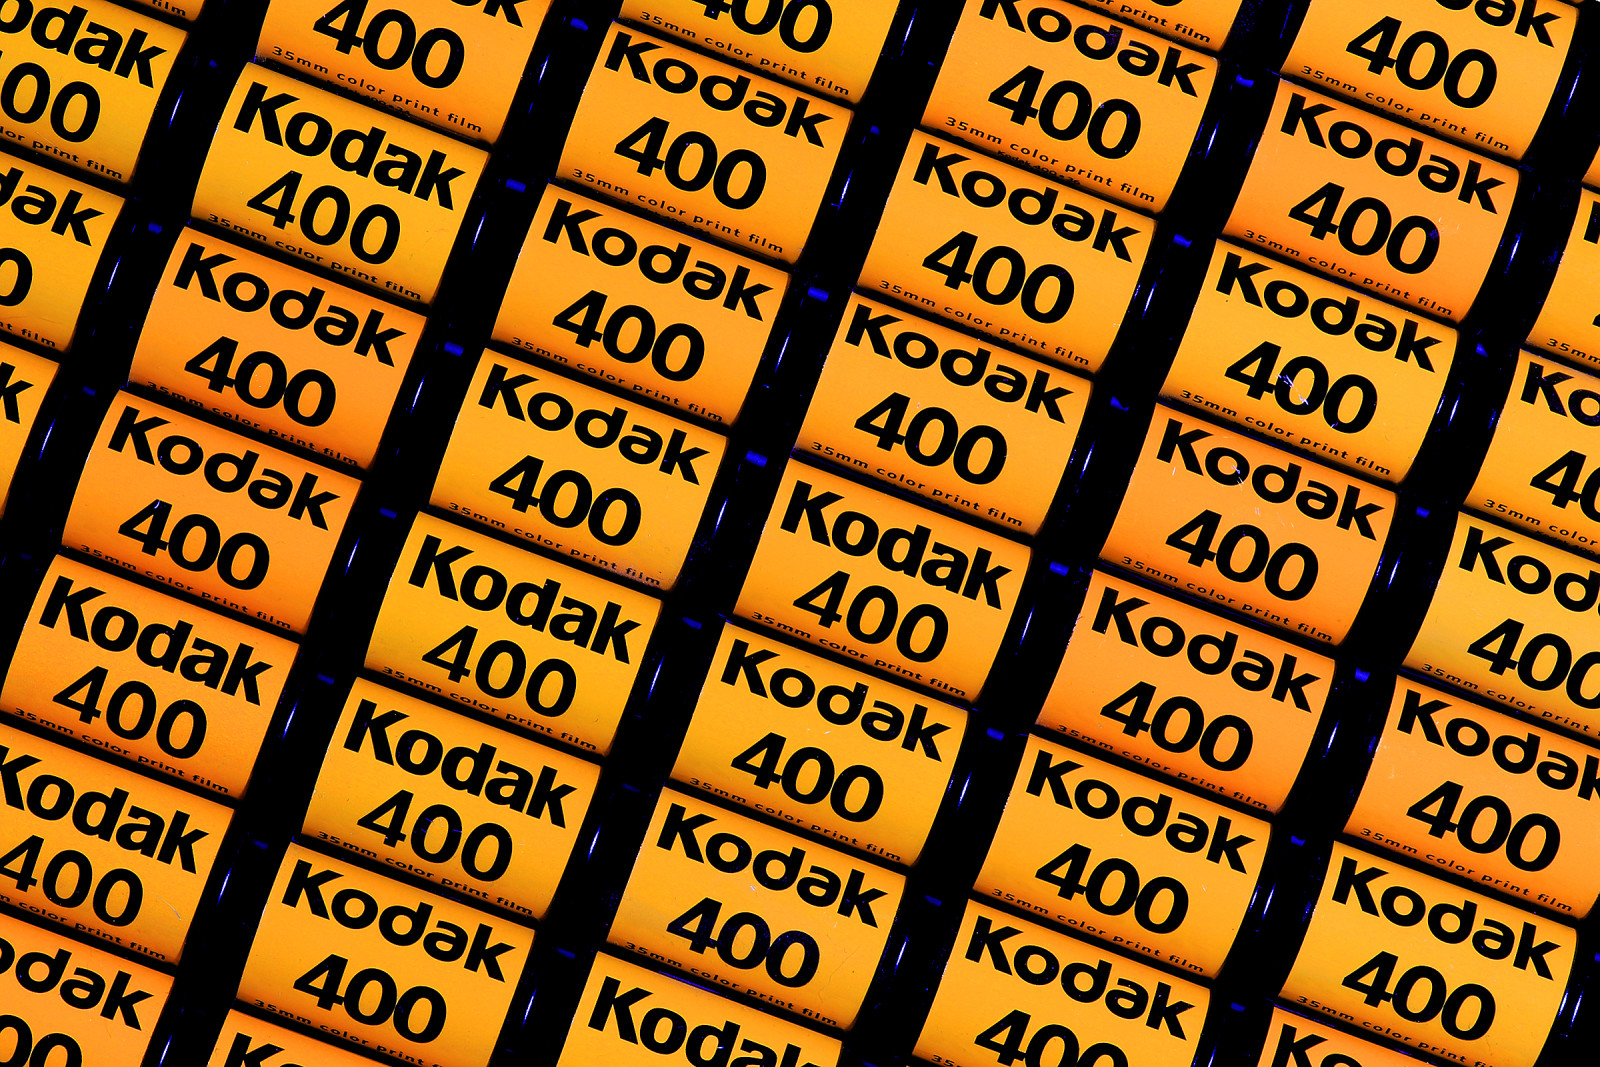 lý lịch, vĩ mô, rất nhiều, phim ảnh, Kodak 400